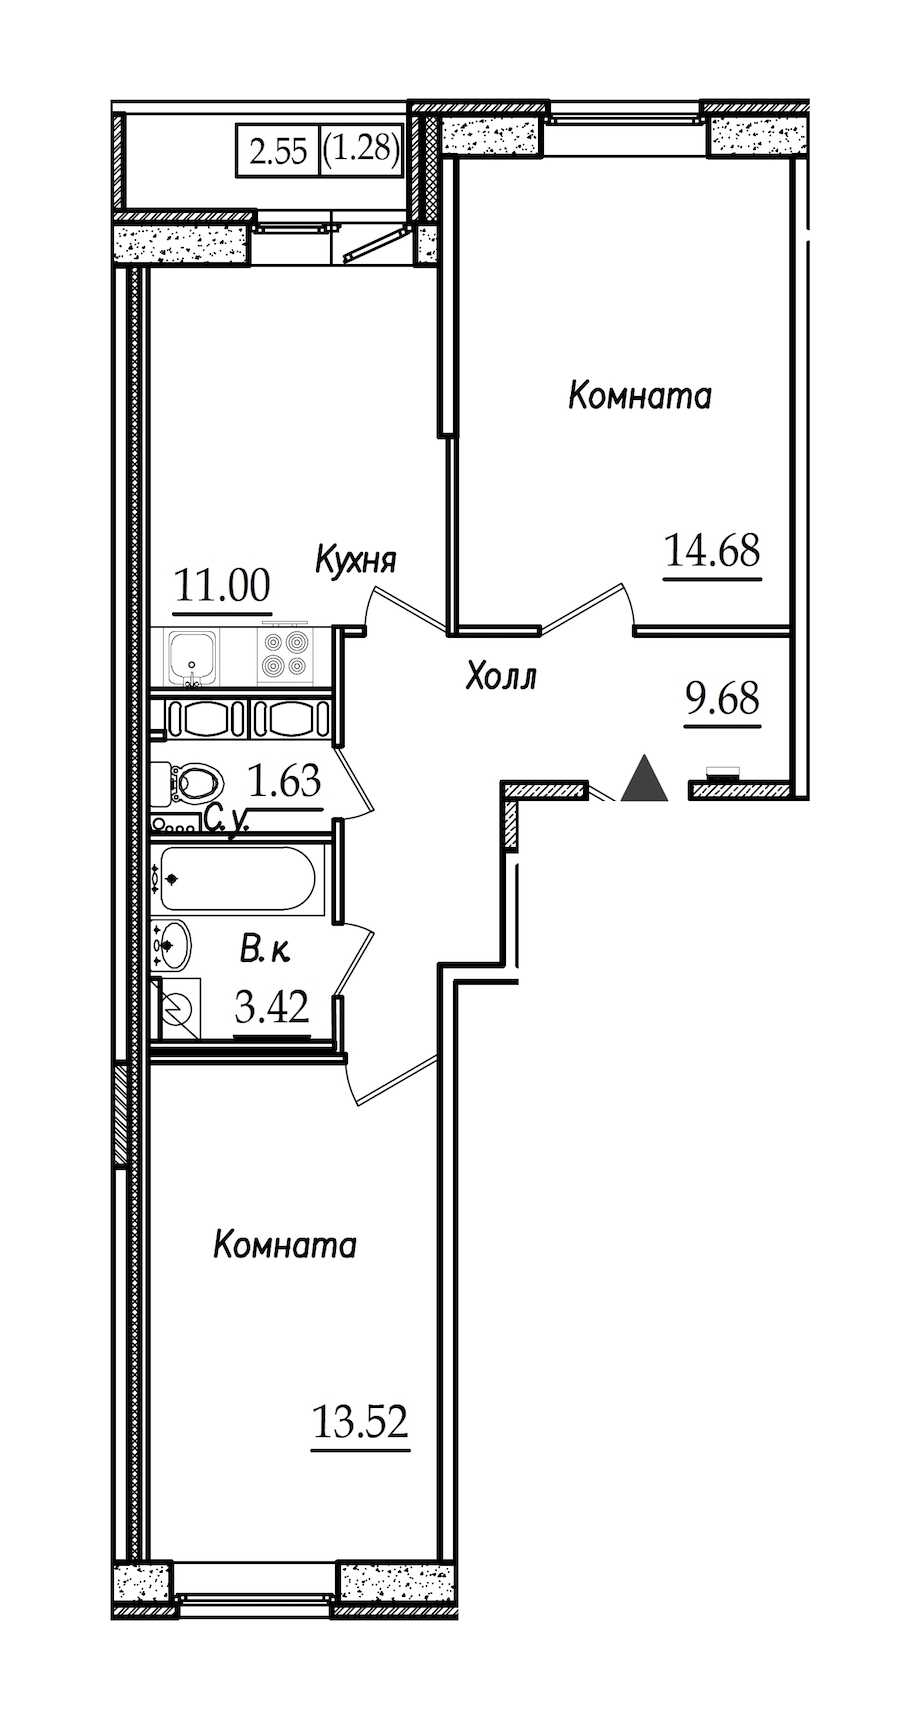 Двухкомнатная квартира в СПб Реновация: площадь 55.21 м2 , этаж: 9 – купить в Санкт-Петербурге